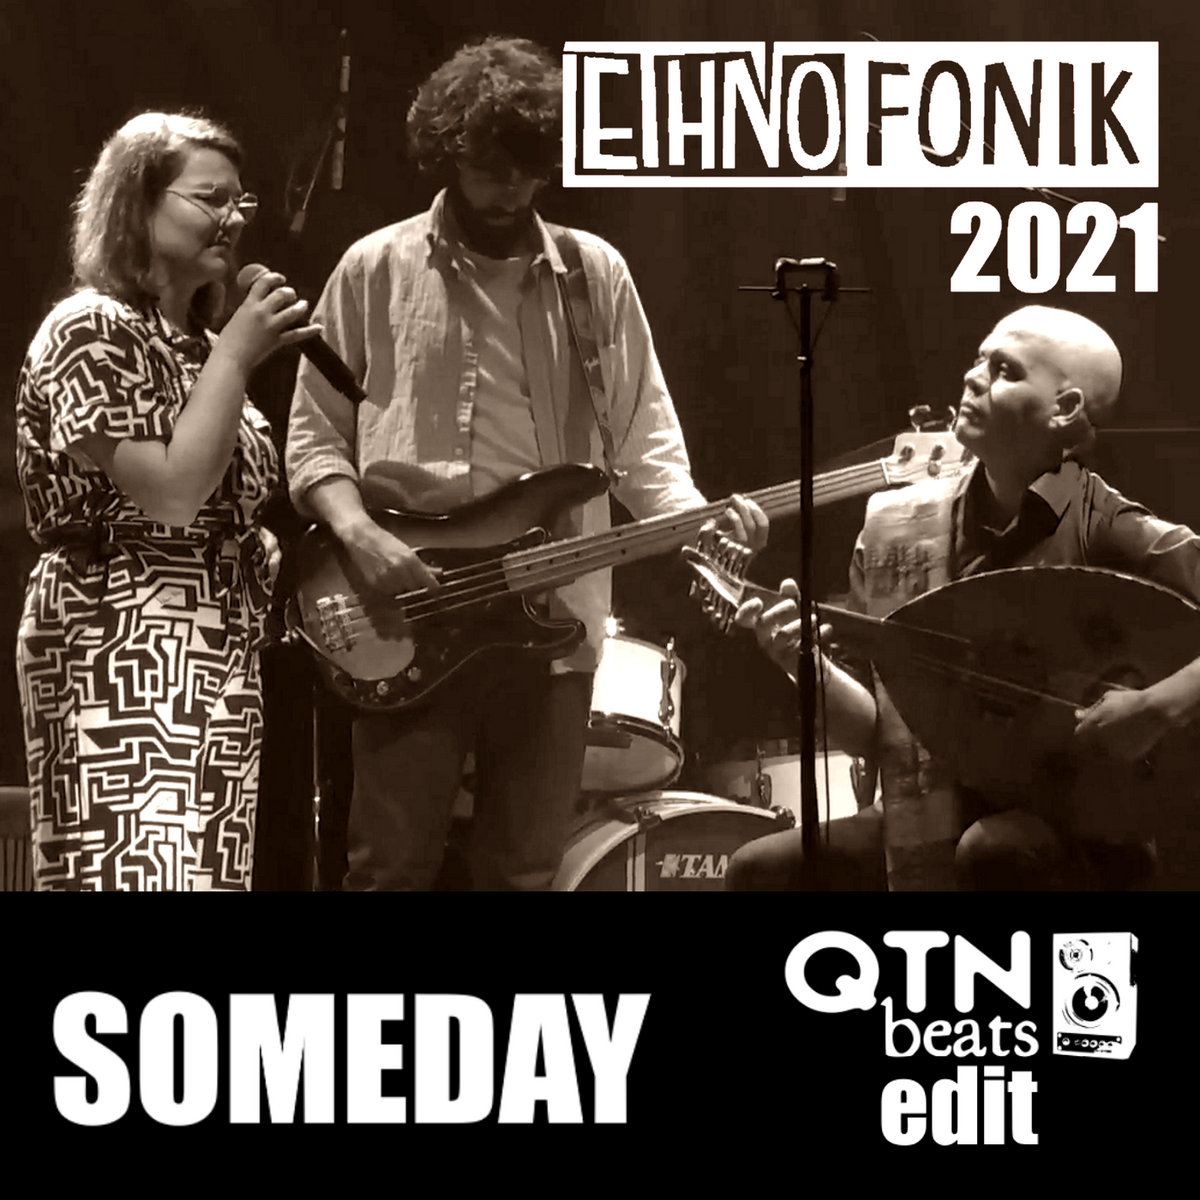 QTN Beats – Ethnofonik 2021 – Someday (qtnbeats edit)